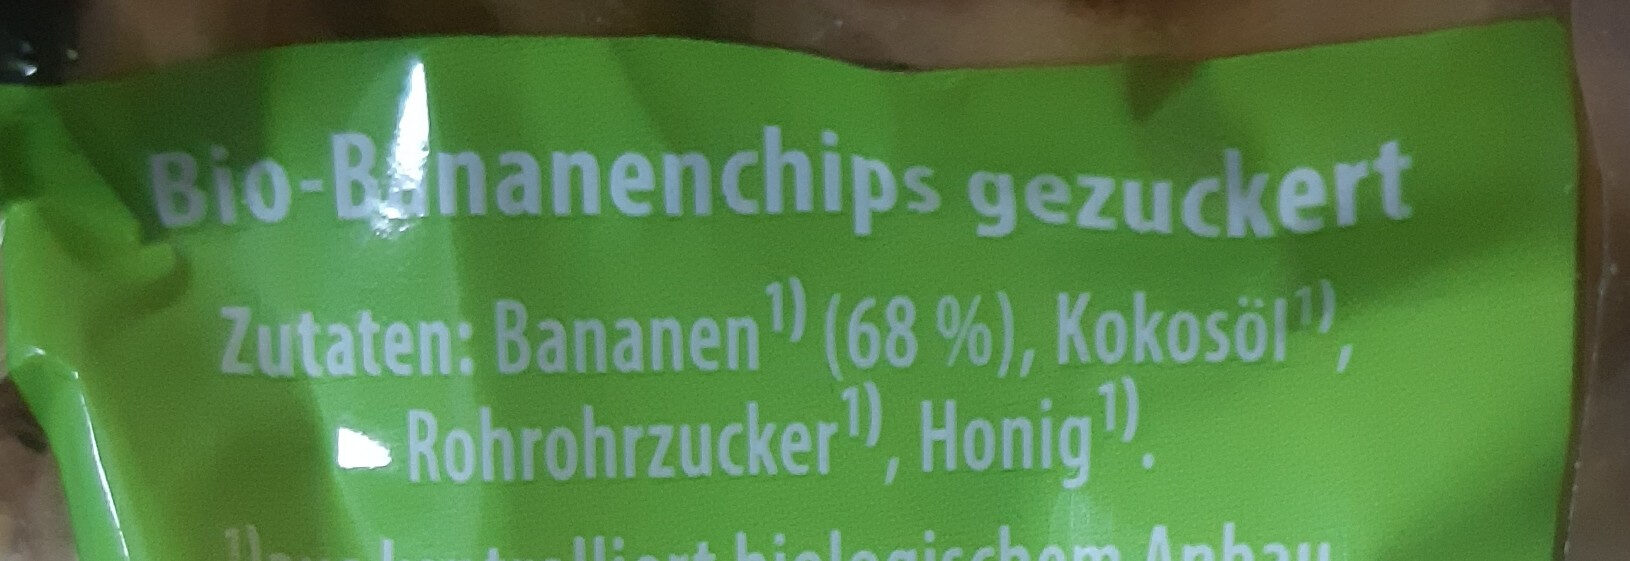 Bananenchips - Ingredients - de